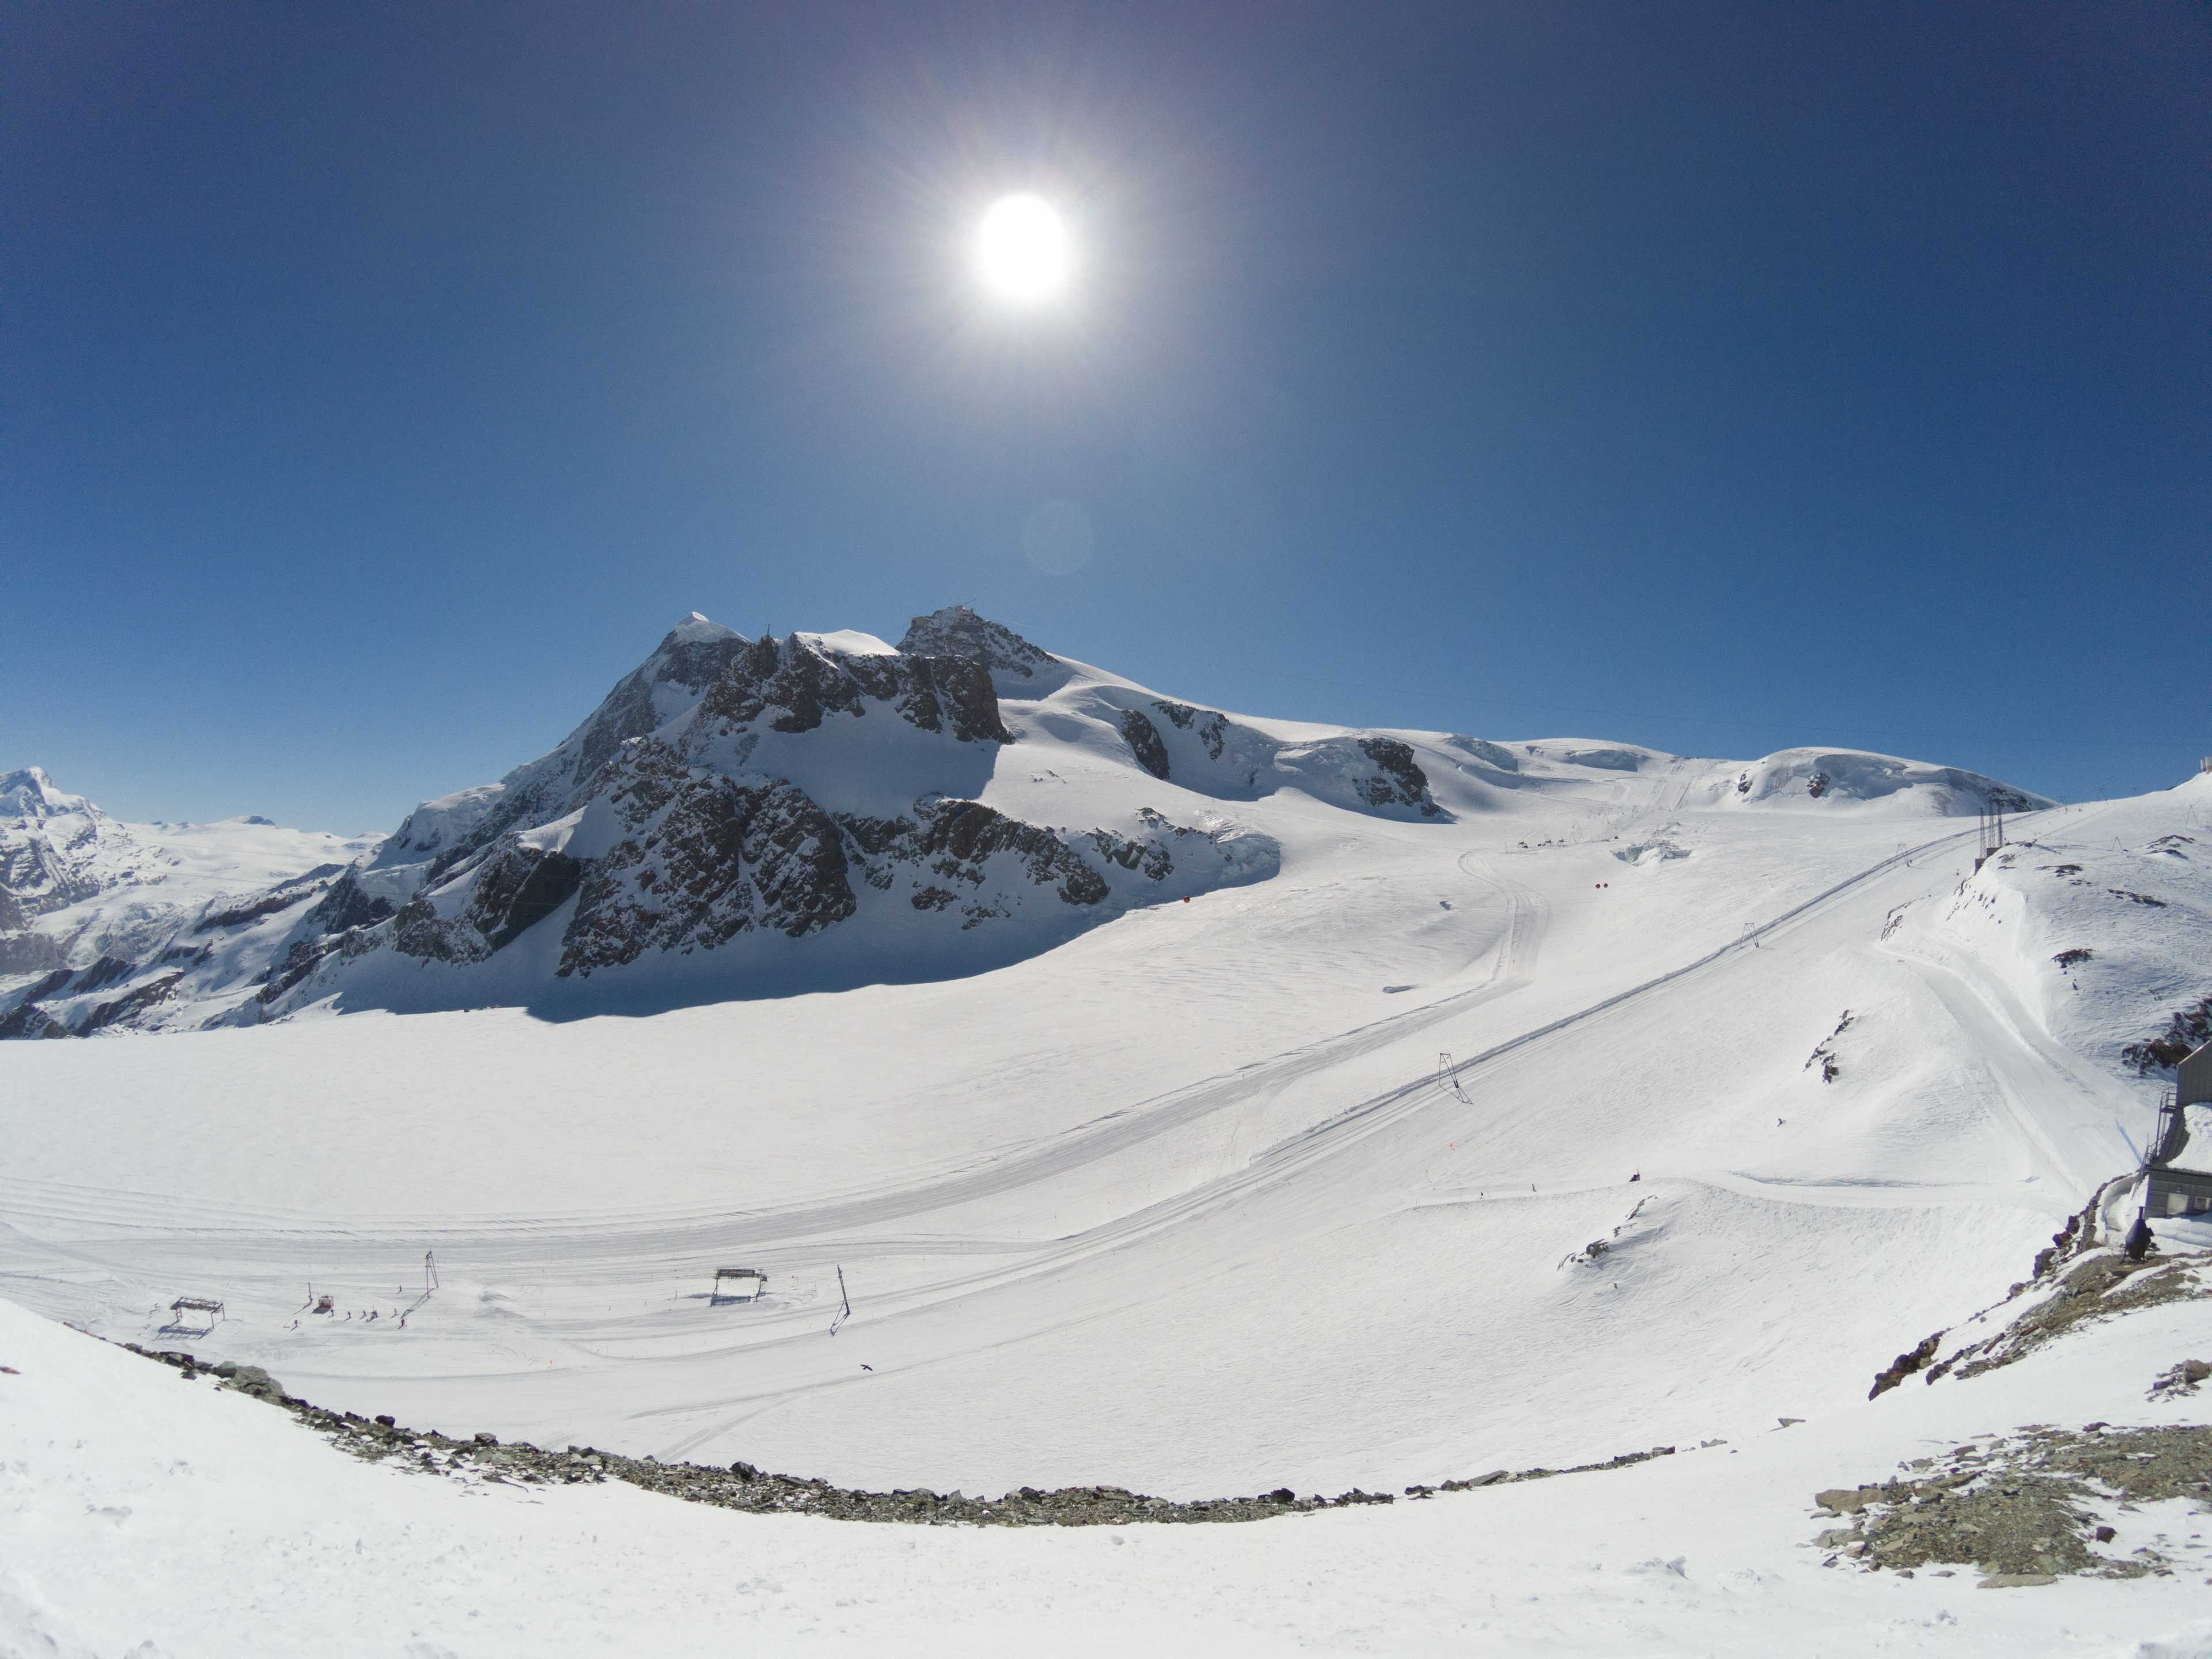 A view of Klein Matterhorn and Plateau Rosa, Zermatt